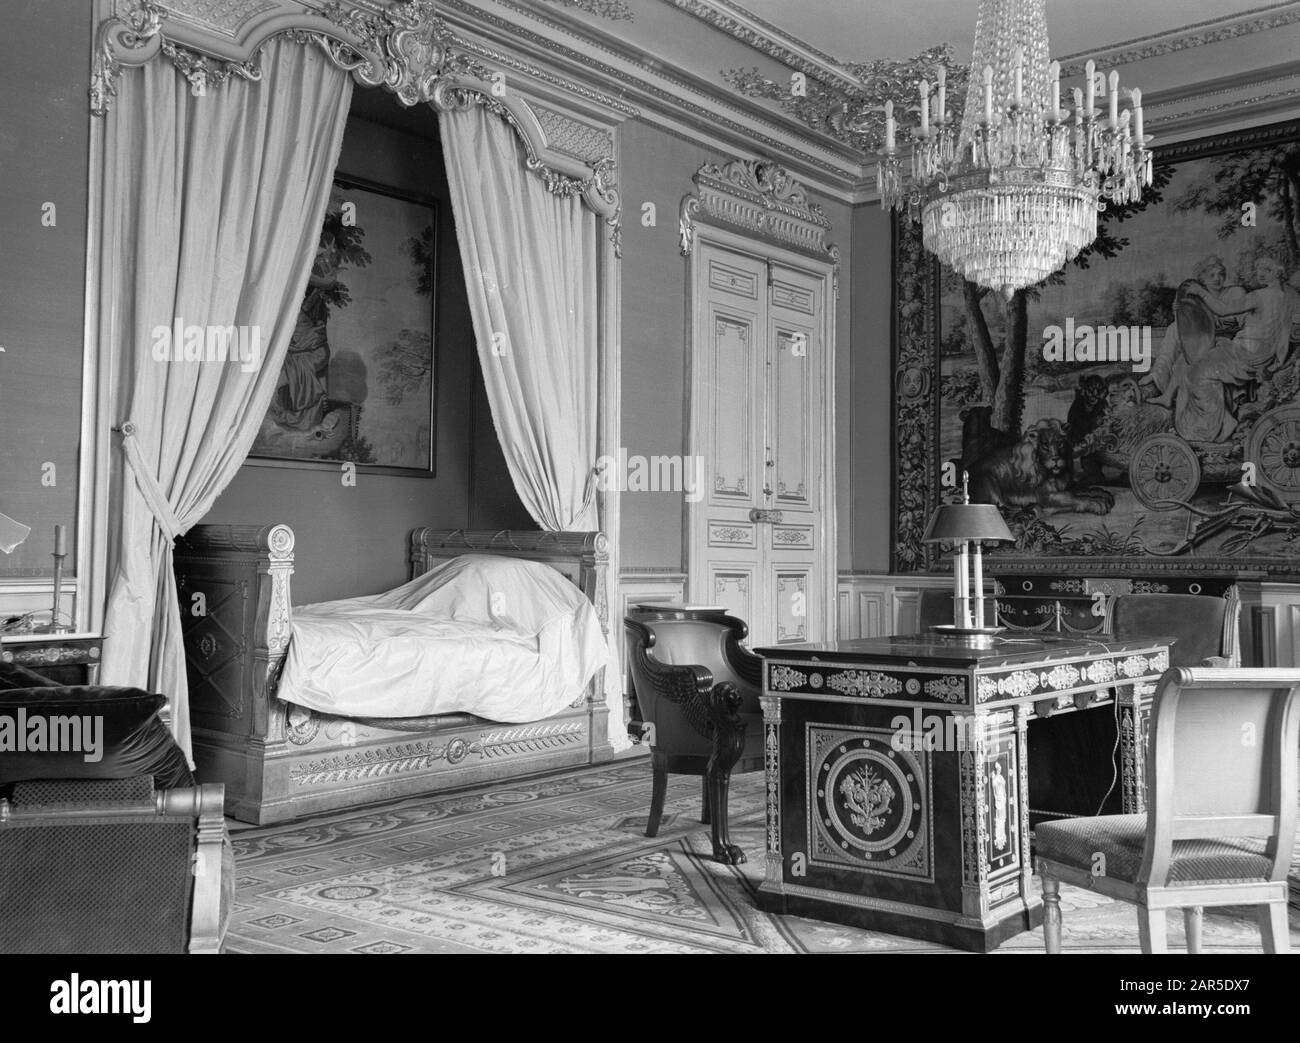 Interno di un palazzo a Parigi, probabilmente la camera in cui il re  Giorgio VI e la regina Elisabetta di Gran Bretagna hanno soggiornato  (l'Eliseo?) Data: 1938 posizione: Francia, Parigi Parole Chiave: